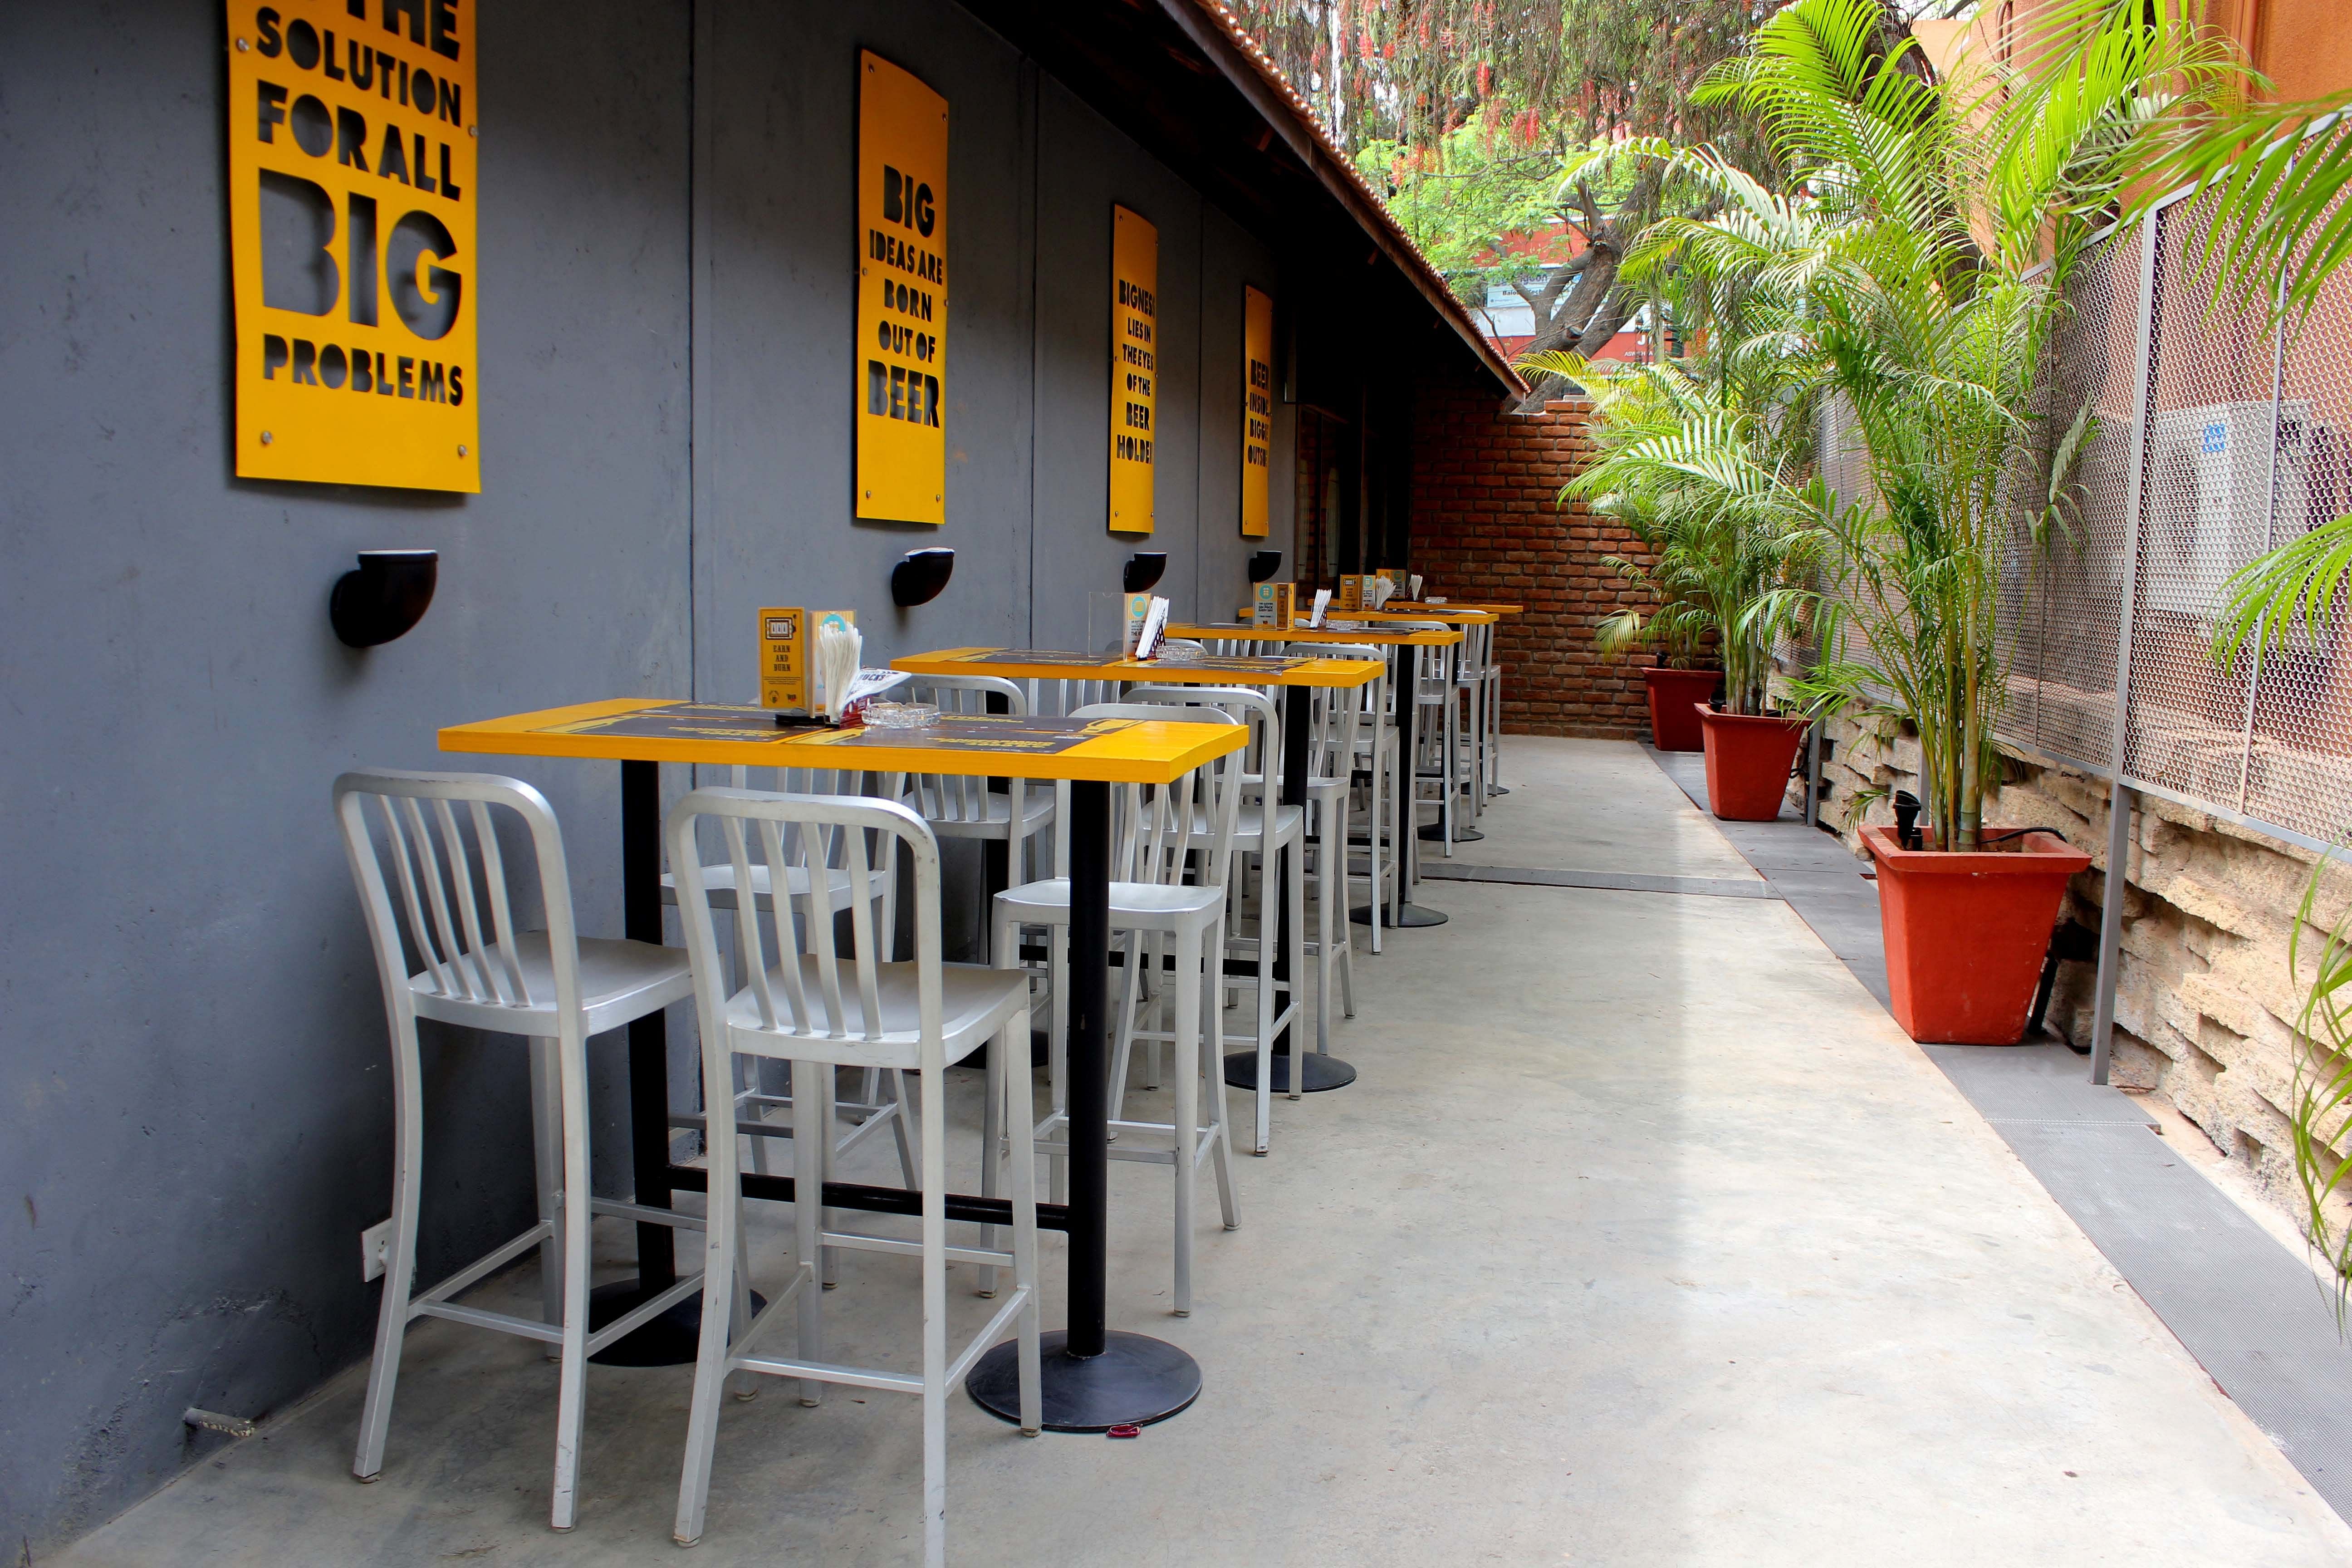 The Beer Cafe Biggie in Koramangala, Bangalore